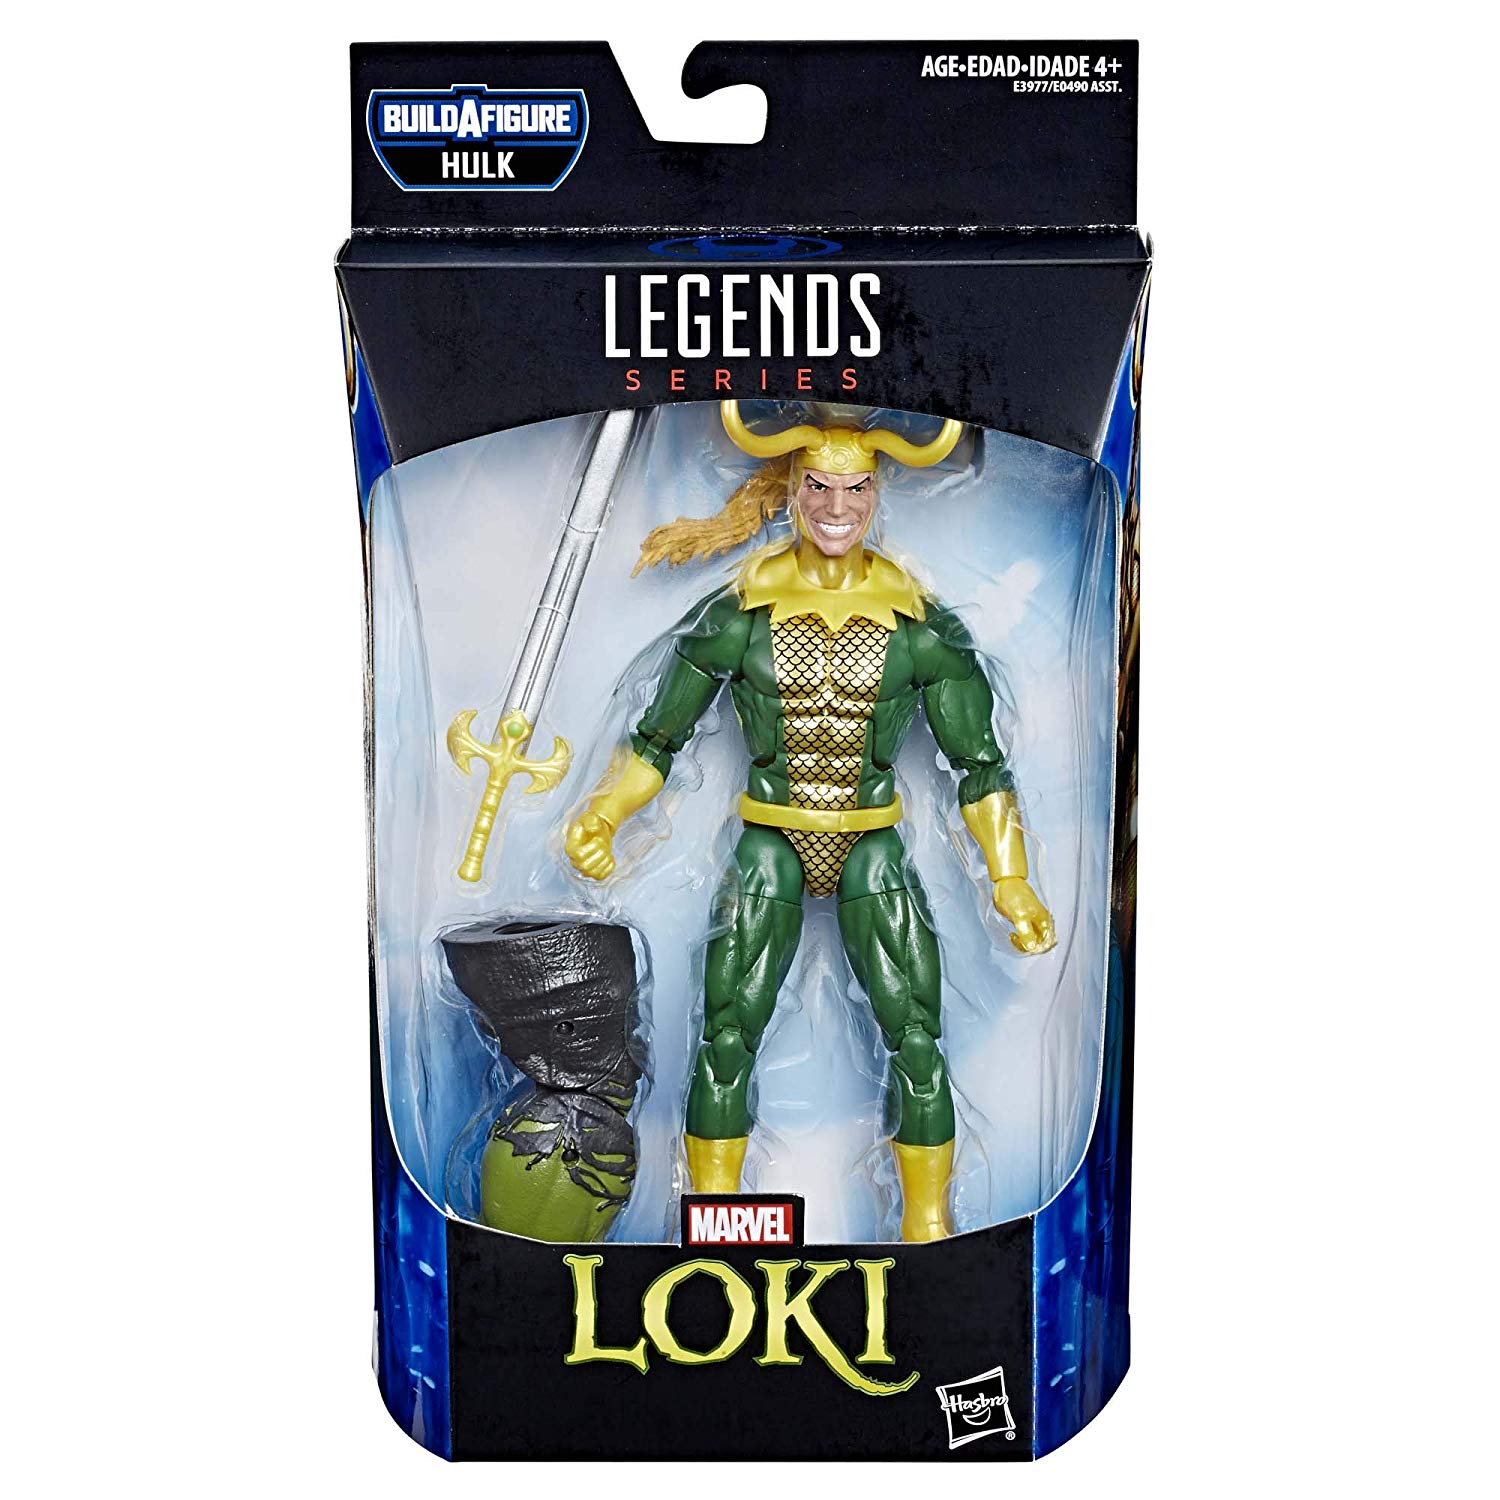 Marvel Legends Endgame Hulk 6" Loki BuildAFigure